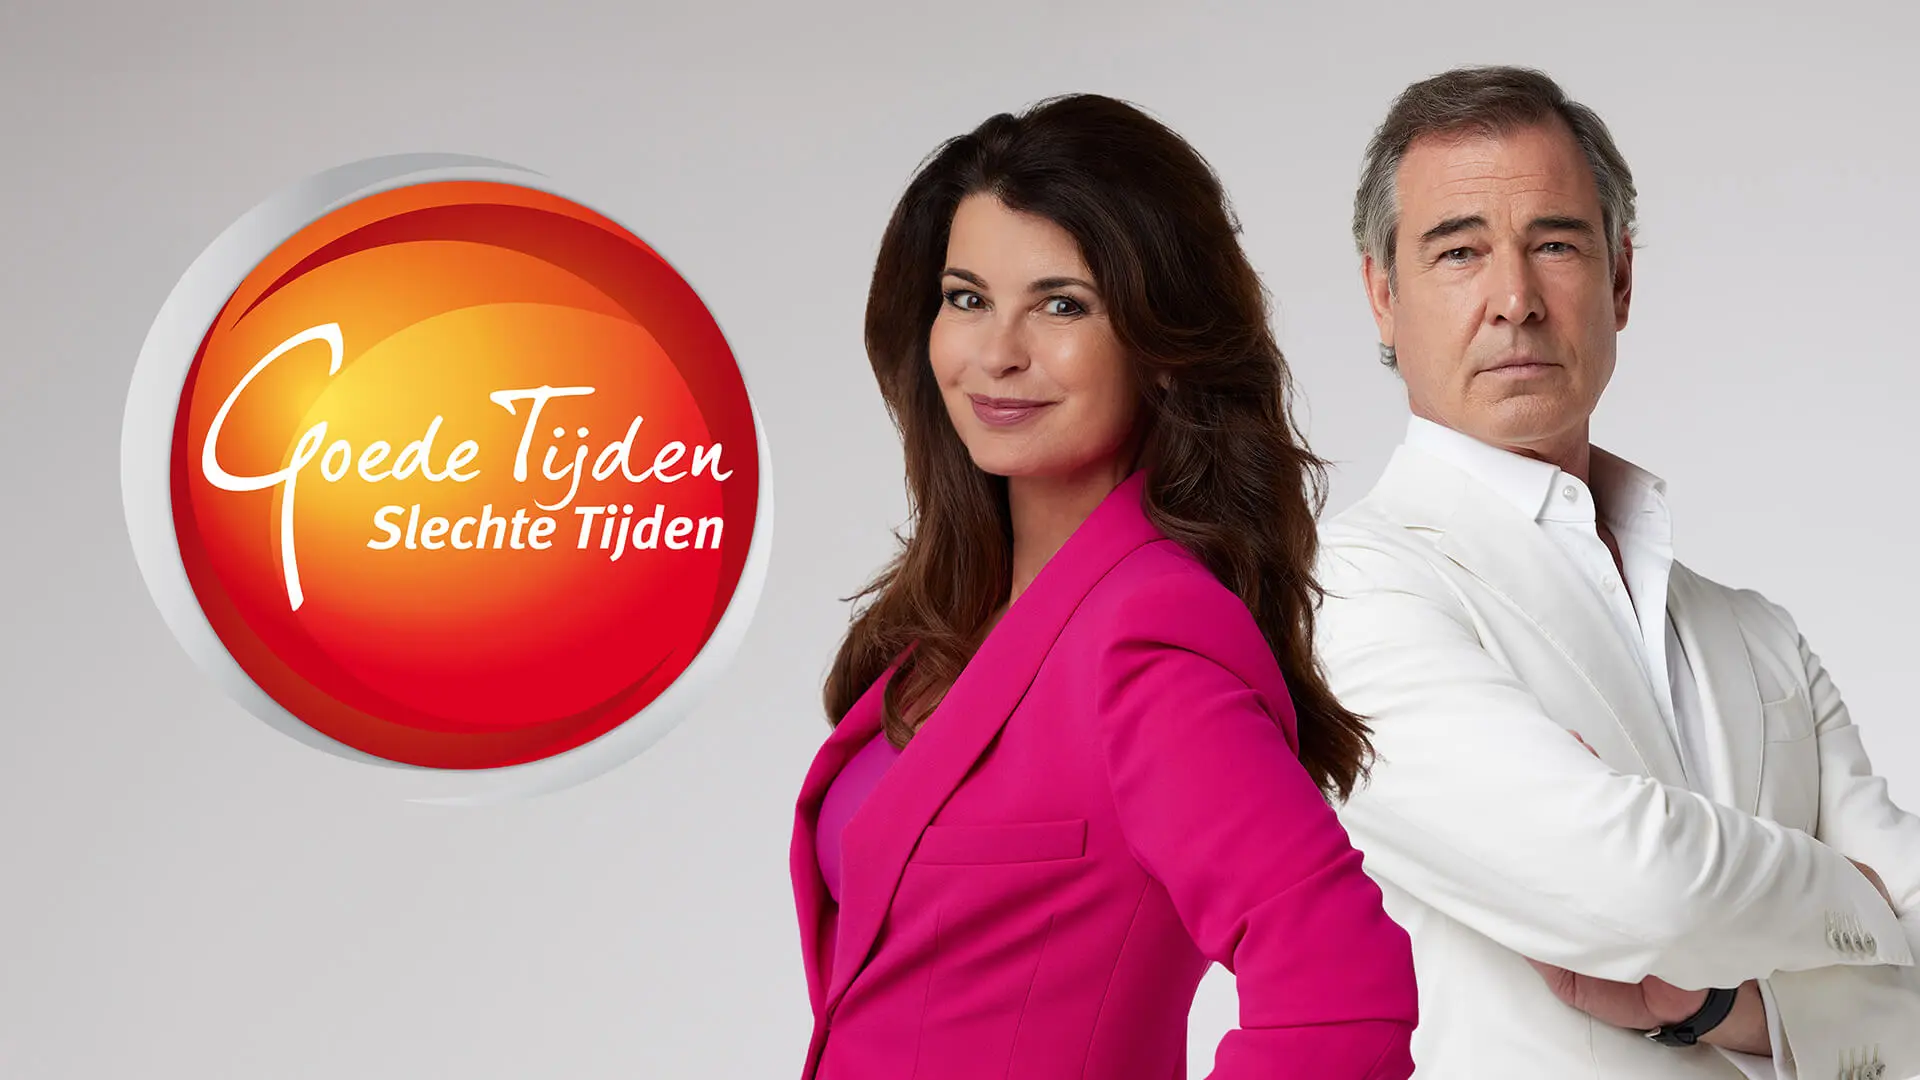 Exclusieve deals en ervaringen voor RTL-kijkers en Videoland-abonnees.